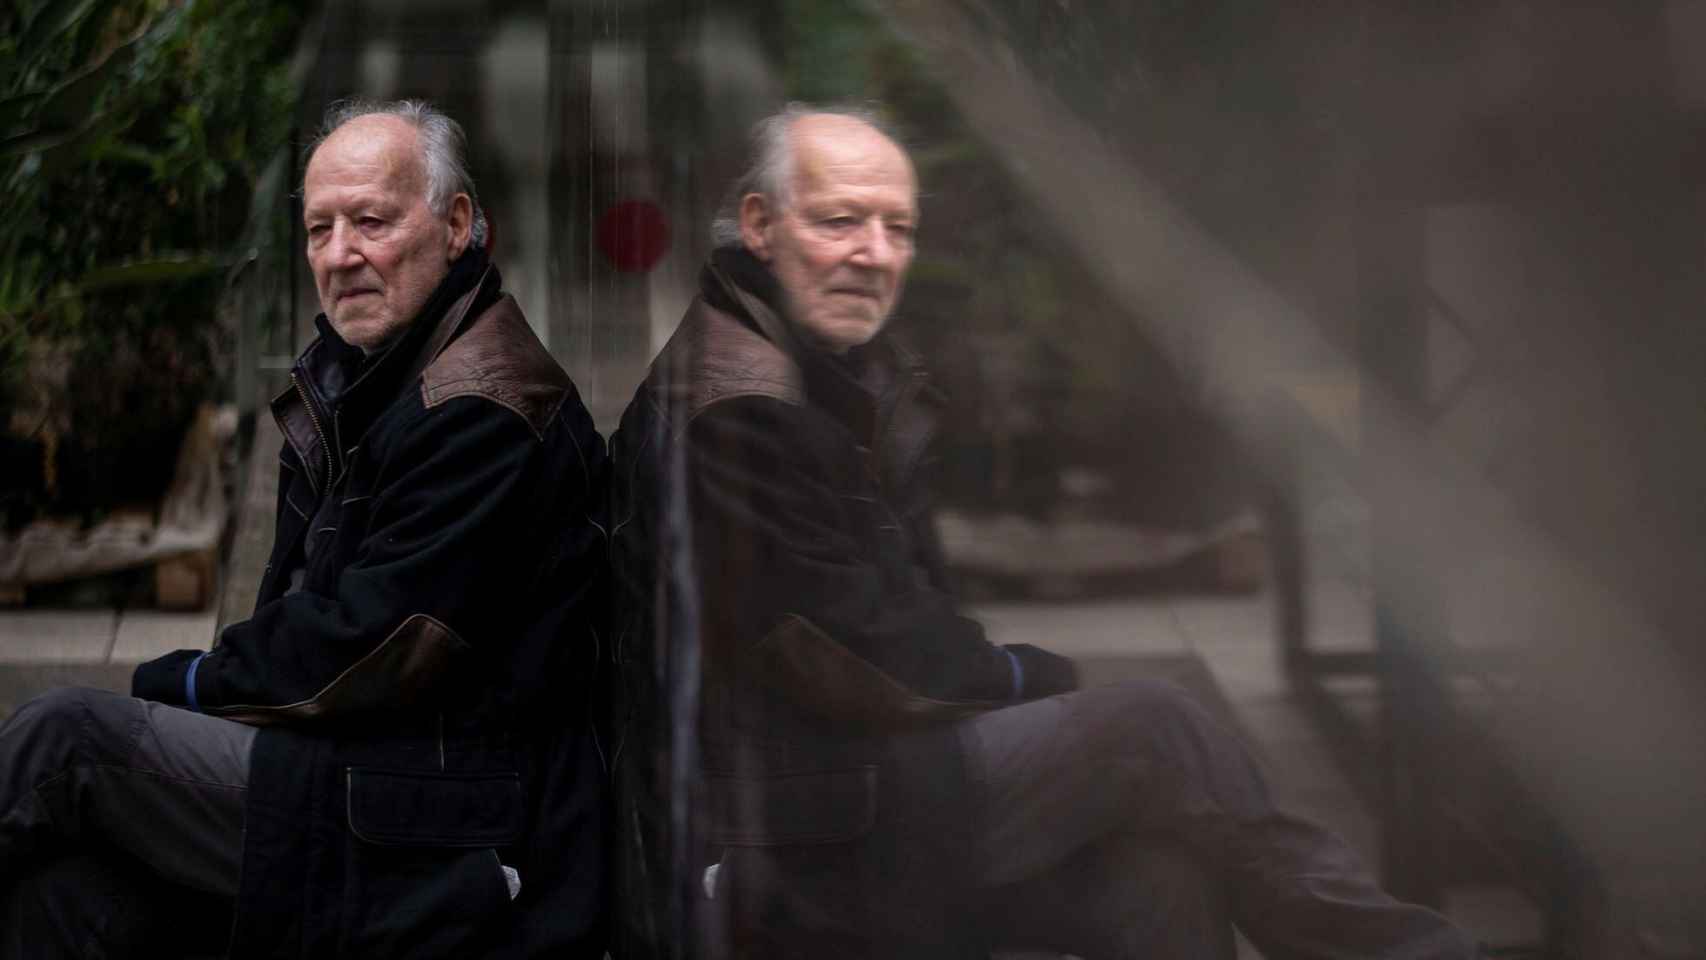 El cineasta Werner Herzog en una imagen en Barcelona en 2021